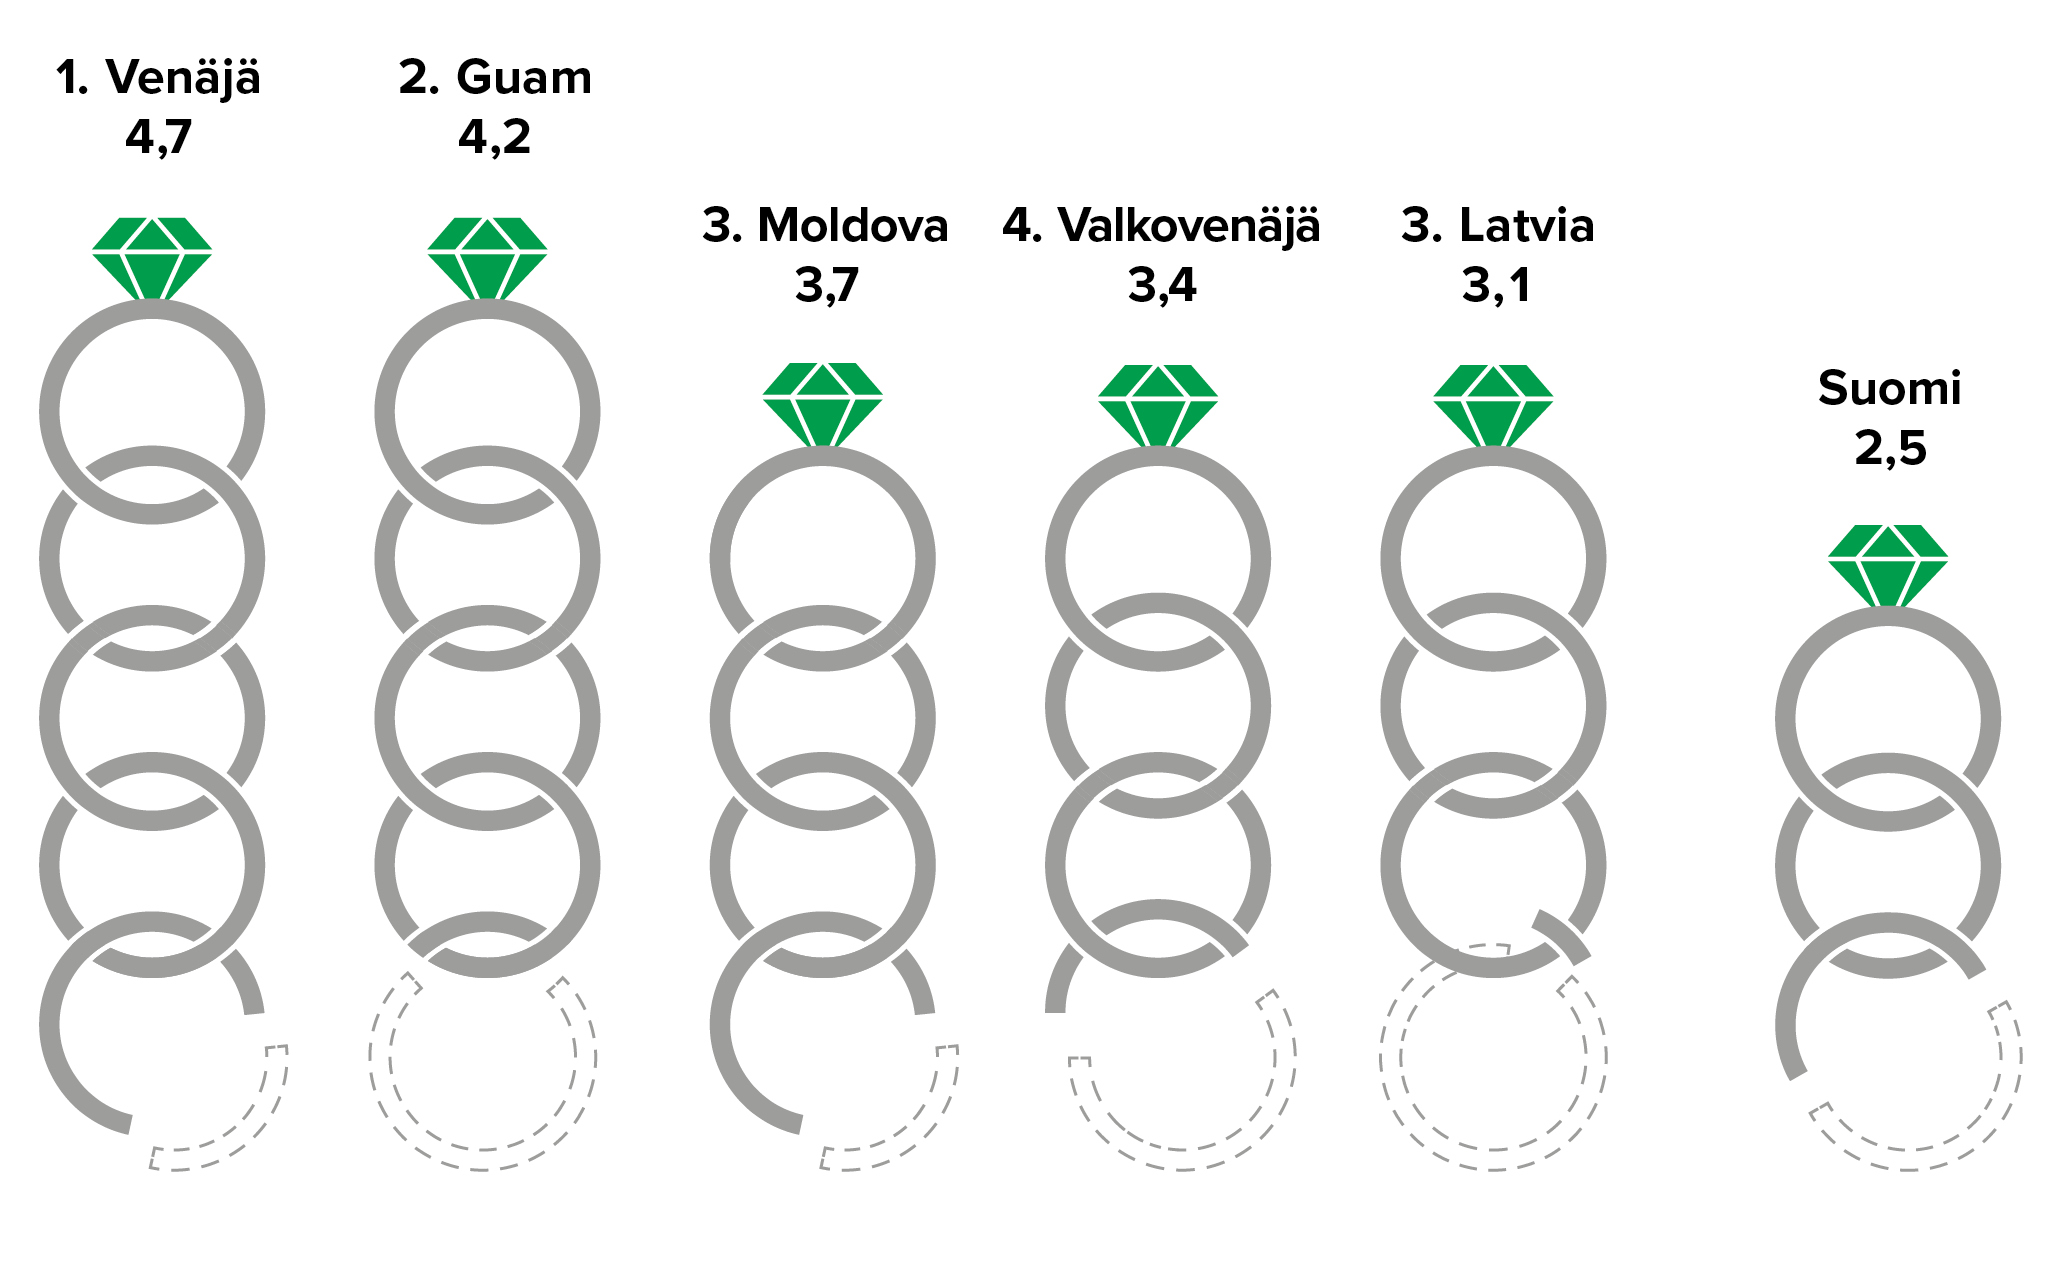 1. Venäjä (4,7); 2. Guam (4,2); 3. Moldova (3,7), 4. Valkovenäjä (3,4); 5. Latvia (3,1); ... Suomi (2,5)